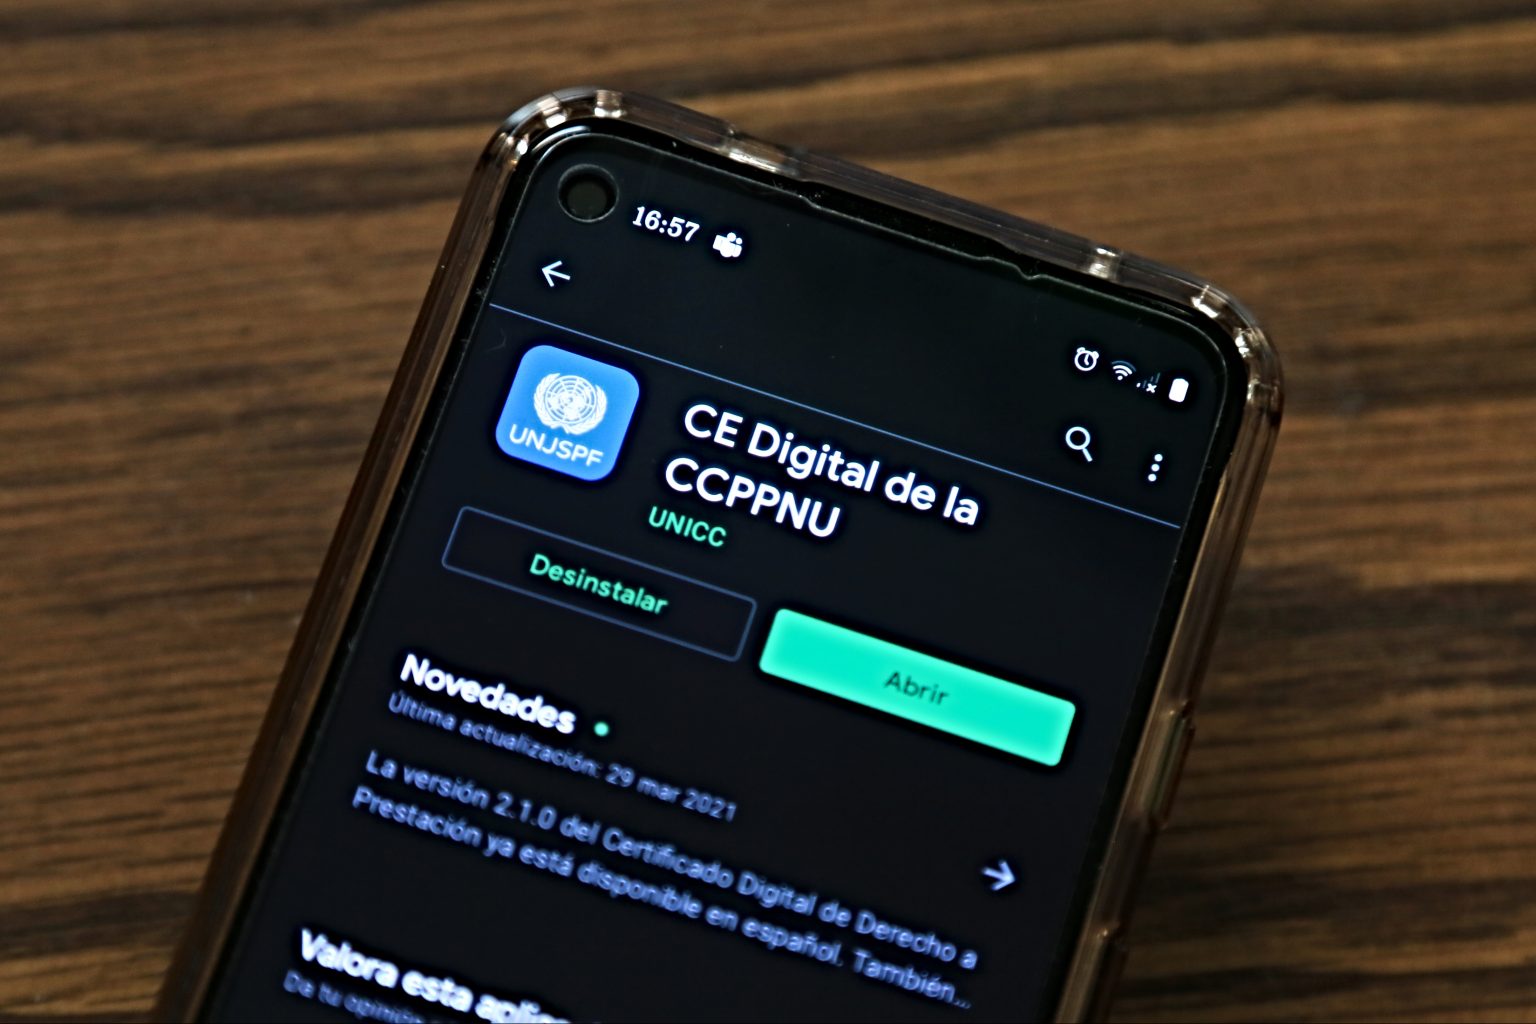 Digital CE App